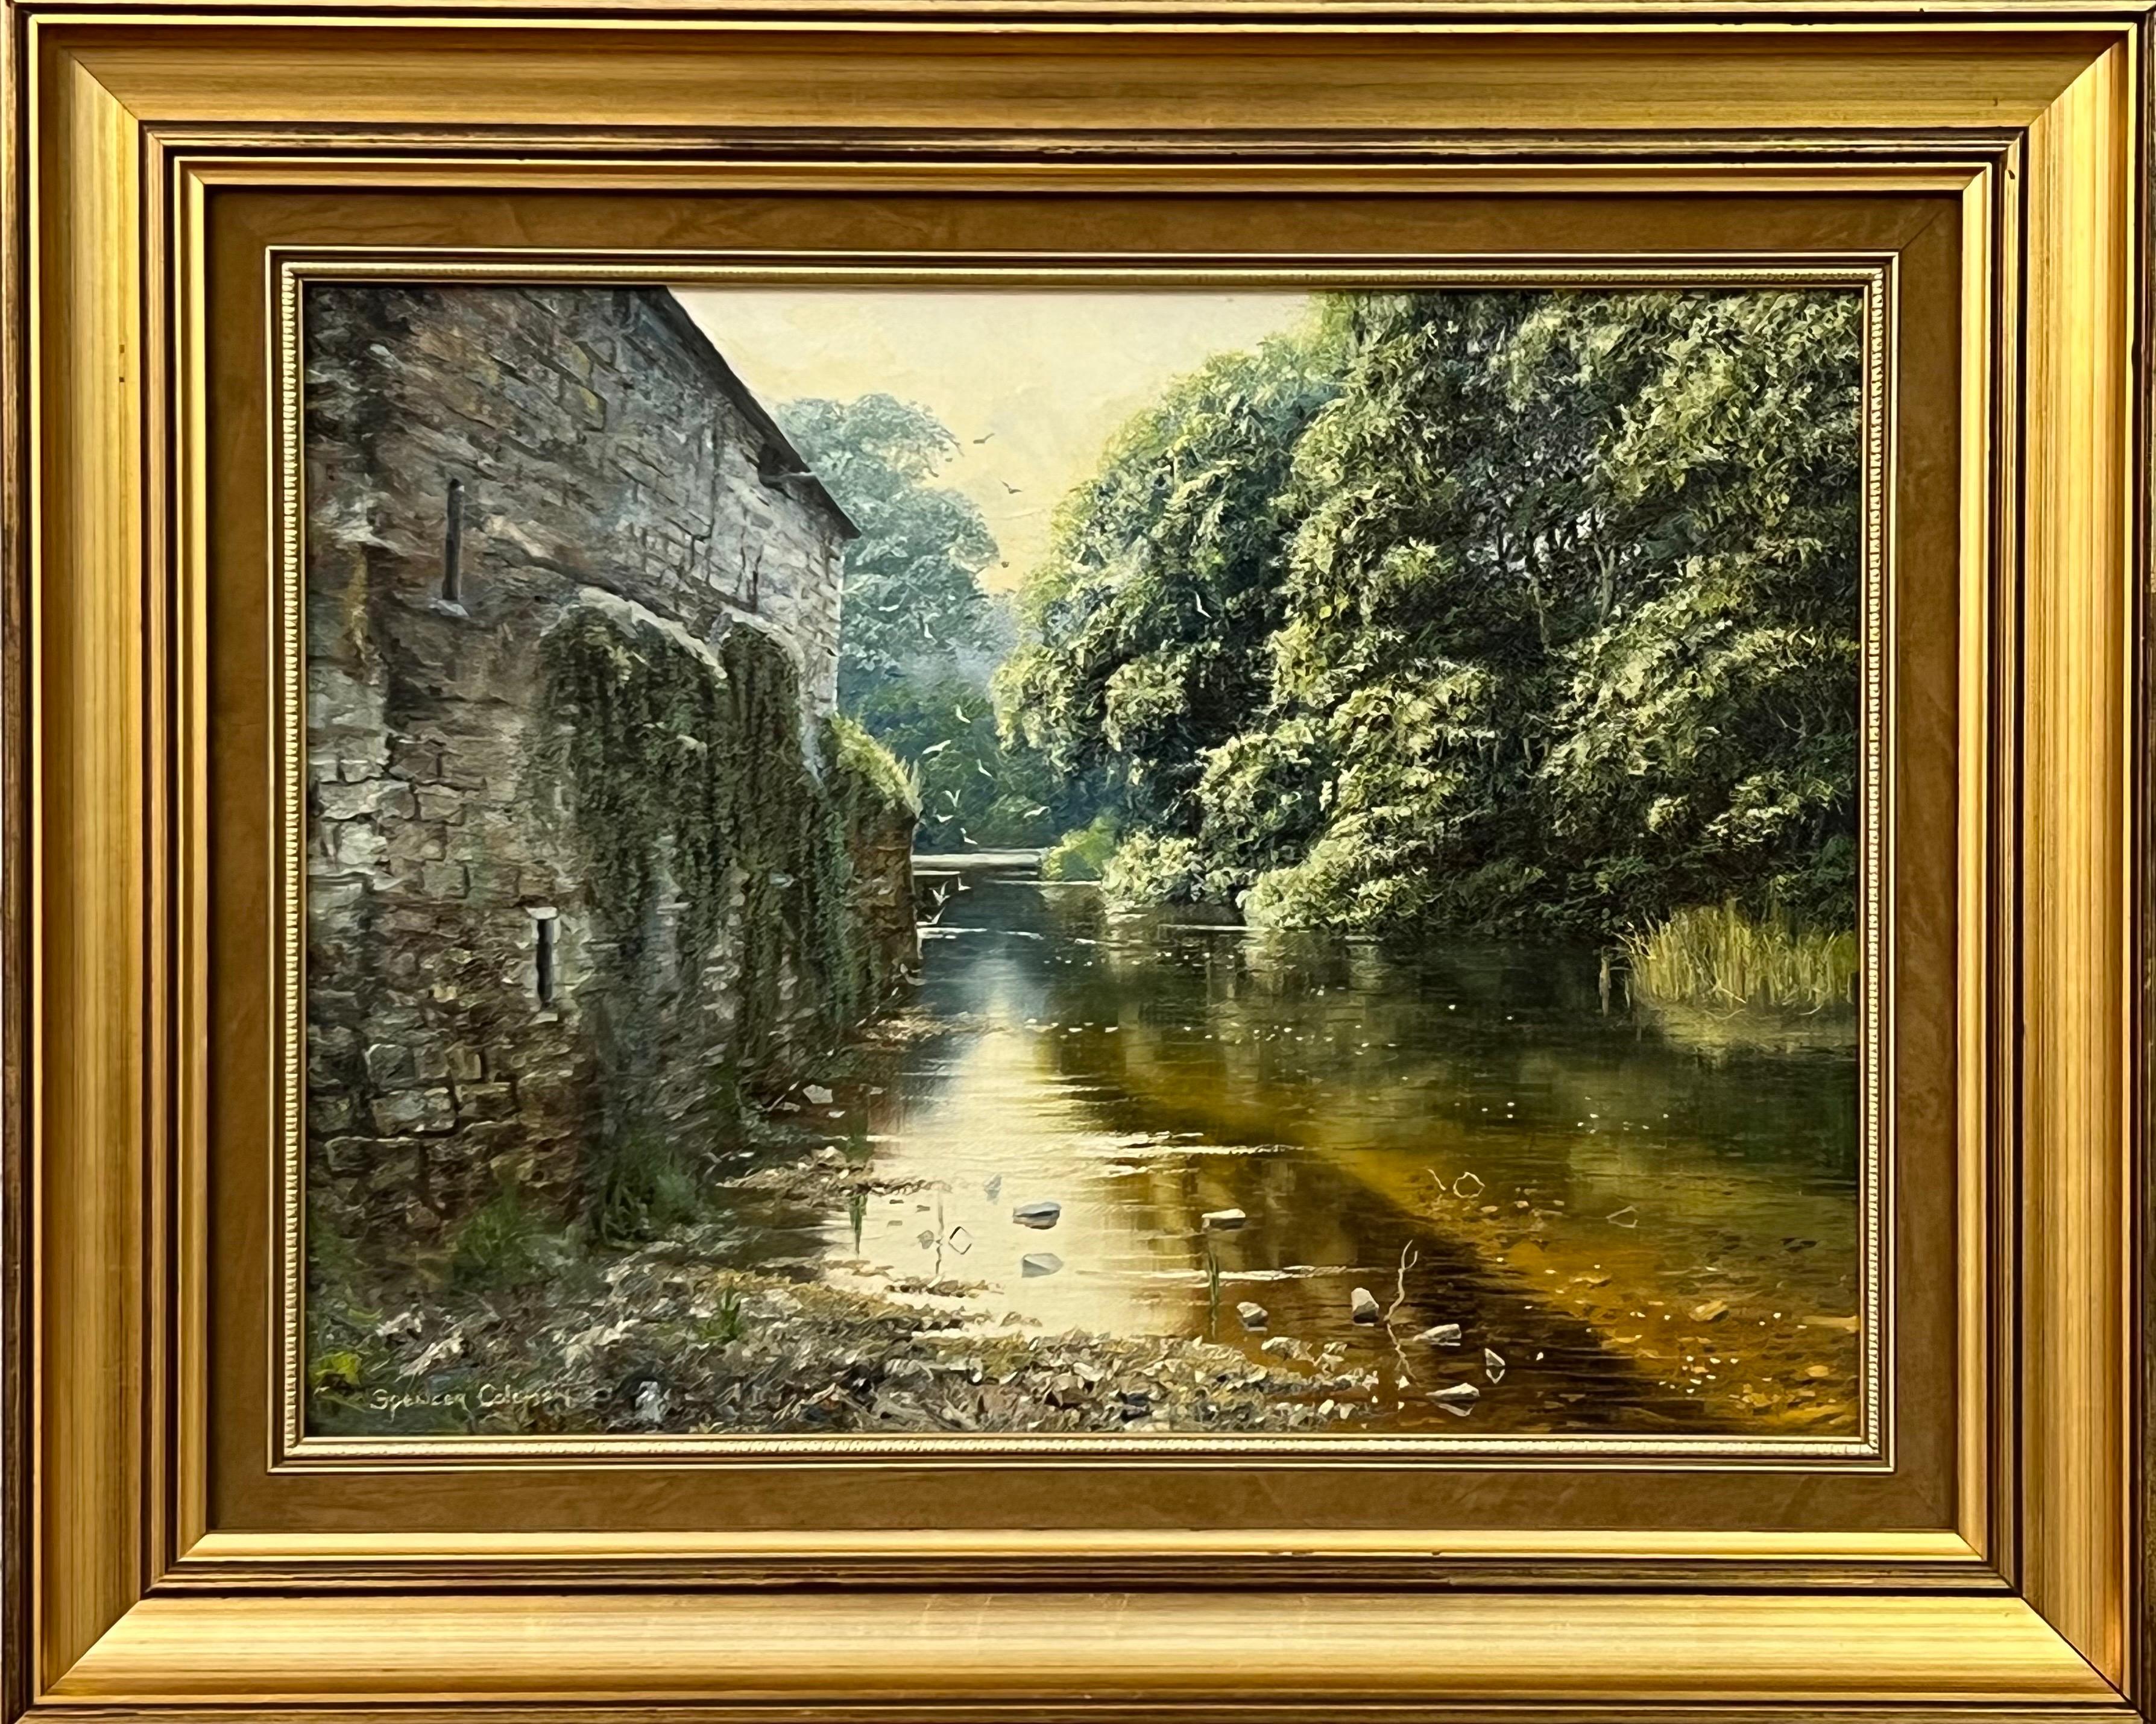 Spencer Coleman Animal Painting – Gemälde einer schönen Flussssssszene mit Vögeln in einer ländlichen Landschaft in Irland